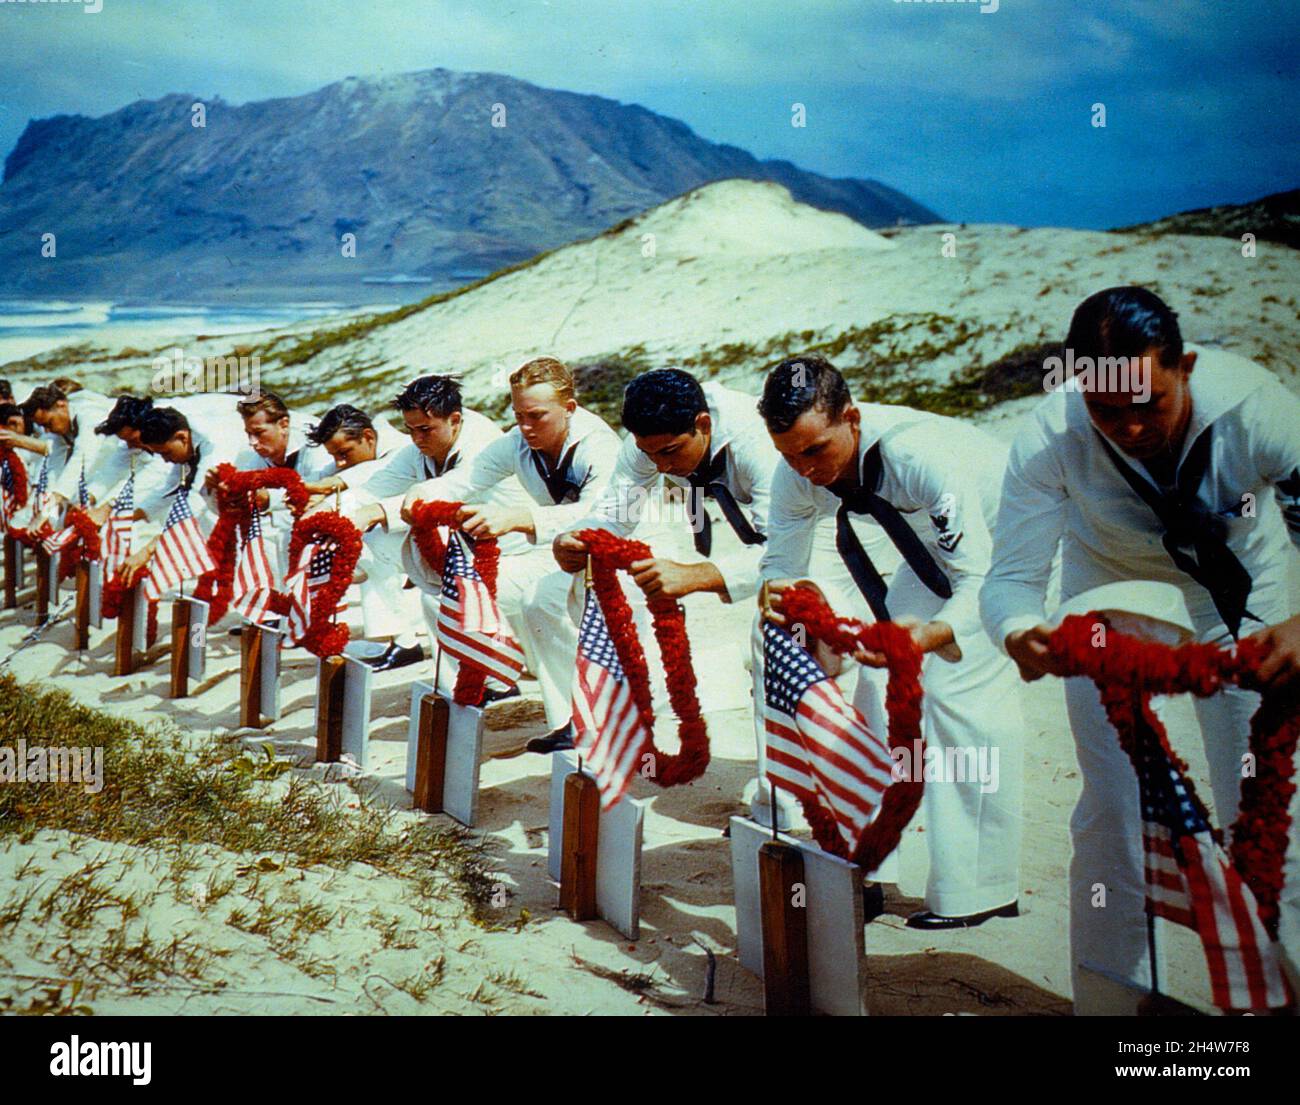 Les marins rendent hommage aux victimes de l'attaque de Pearl Harbor dans un cimetière des îles hawaïennes, vers le printemps 1942, peut-être le jour du souvenir. Banque D'Images